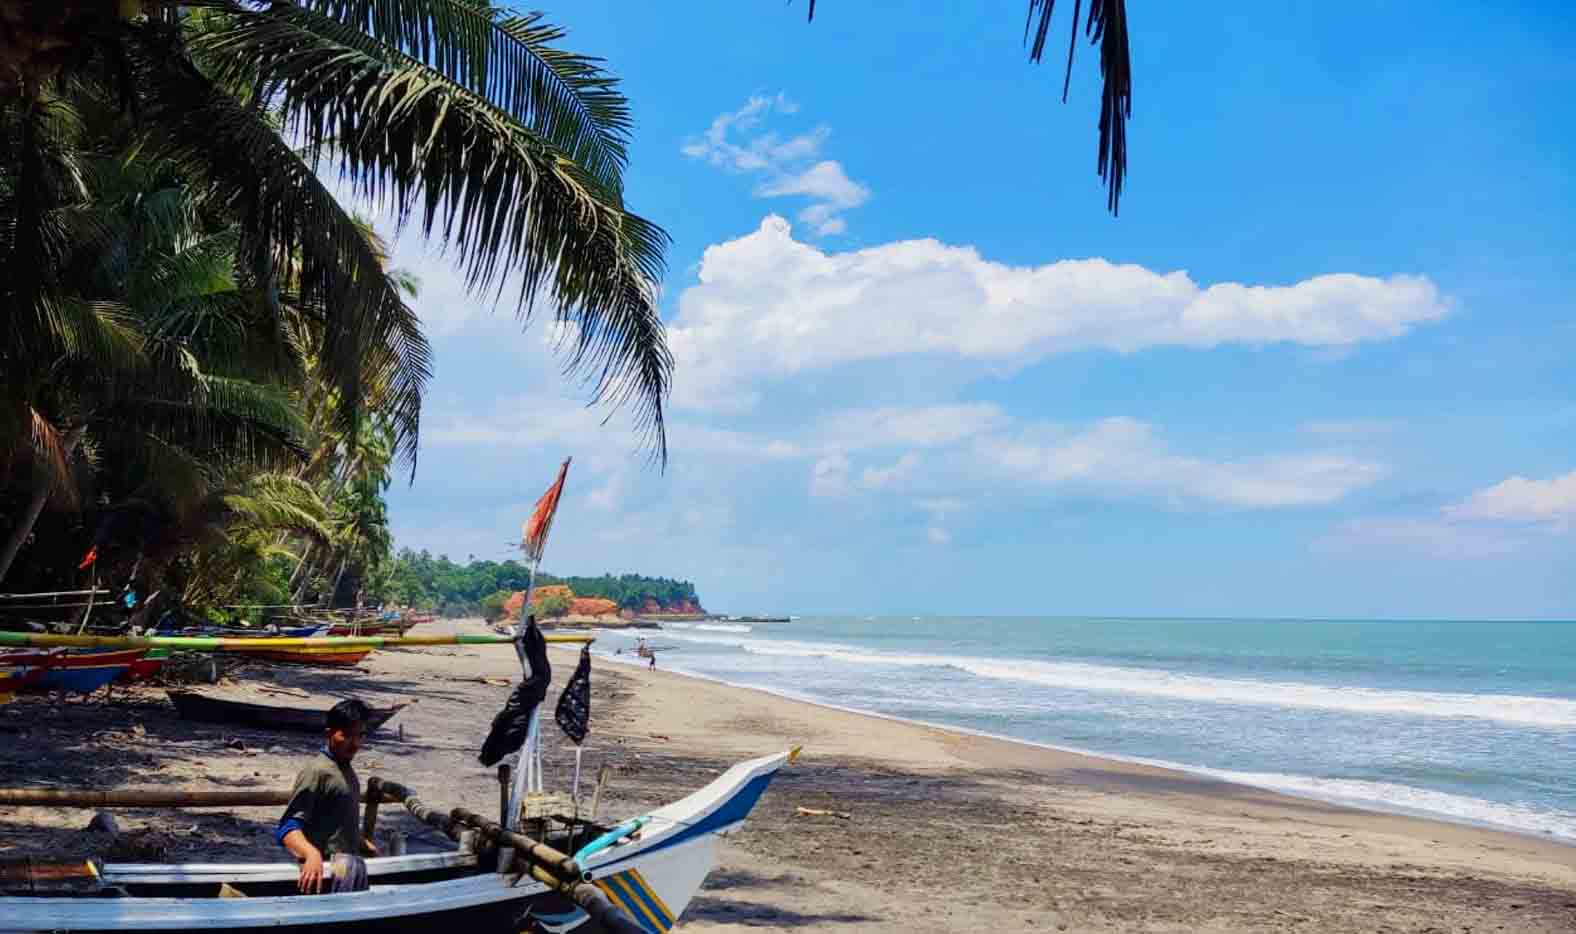 Pantai Lubuk Tanjung, Pesona Tersembunyi di Air Napal, Bisa Bakar Ikan Segar di Sini